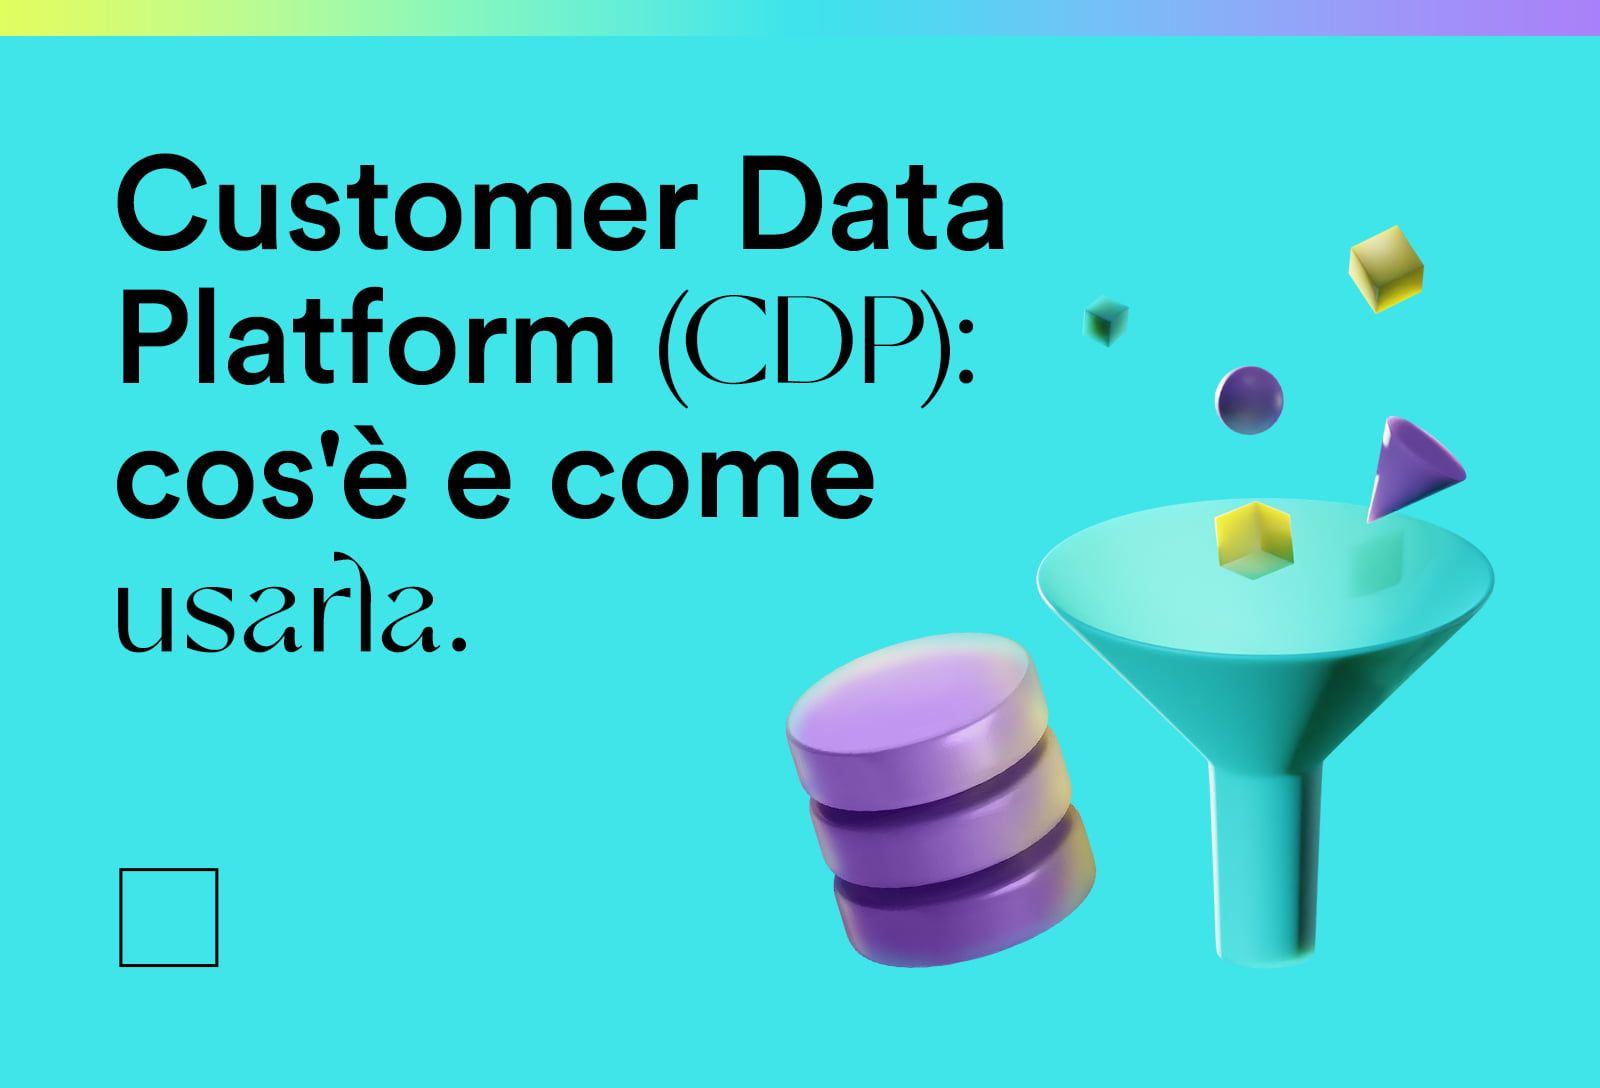 Customer Data Platform (CDP): cos’è e come usarla per mettere il turbo al tuo marketing